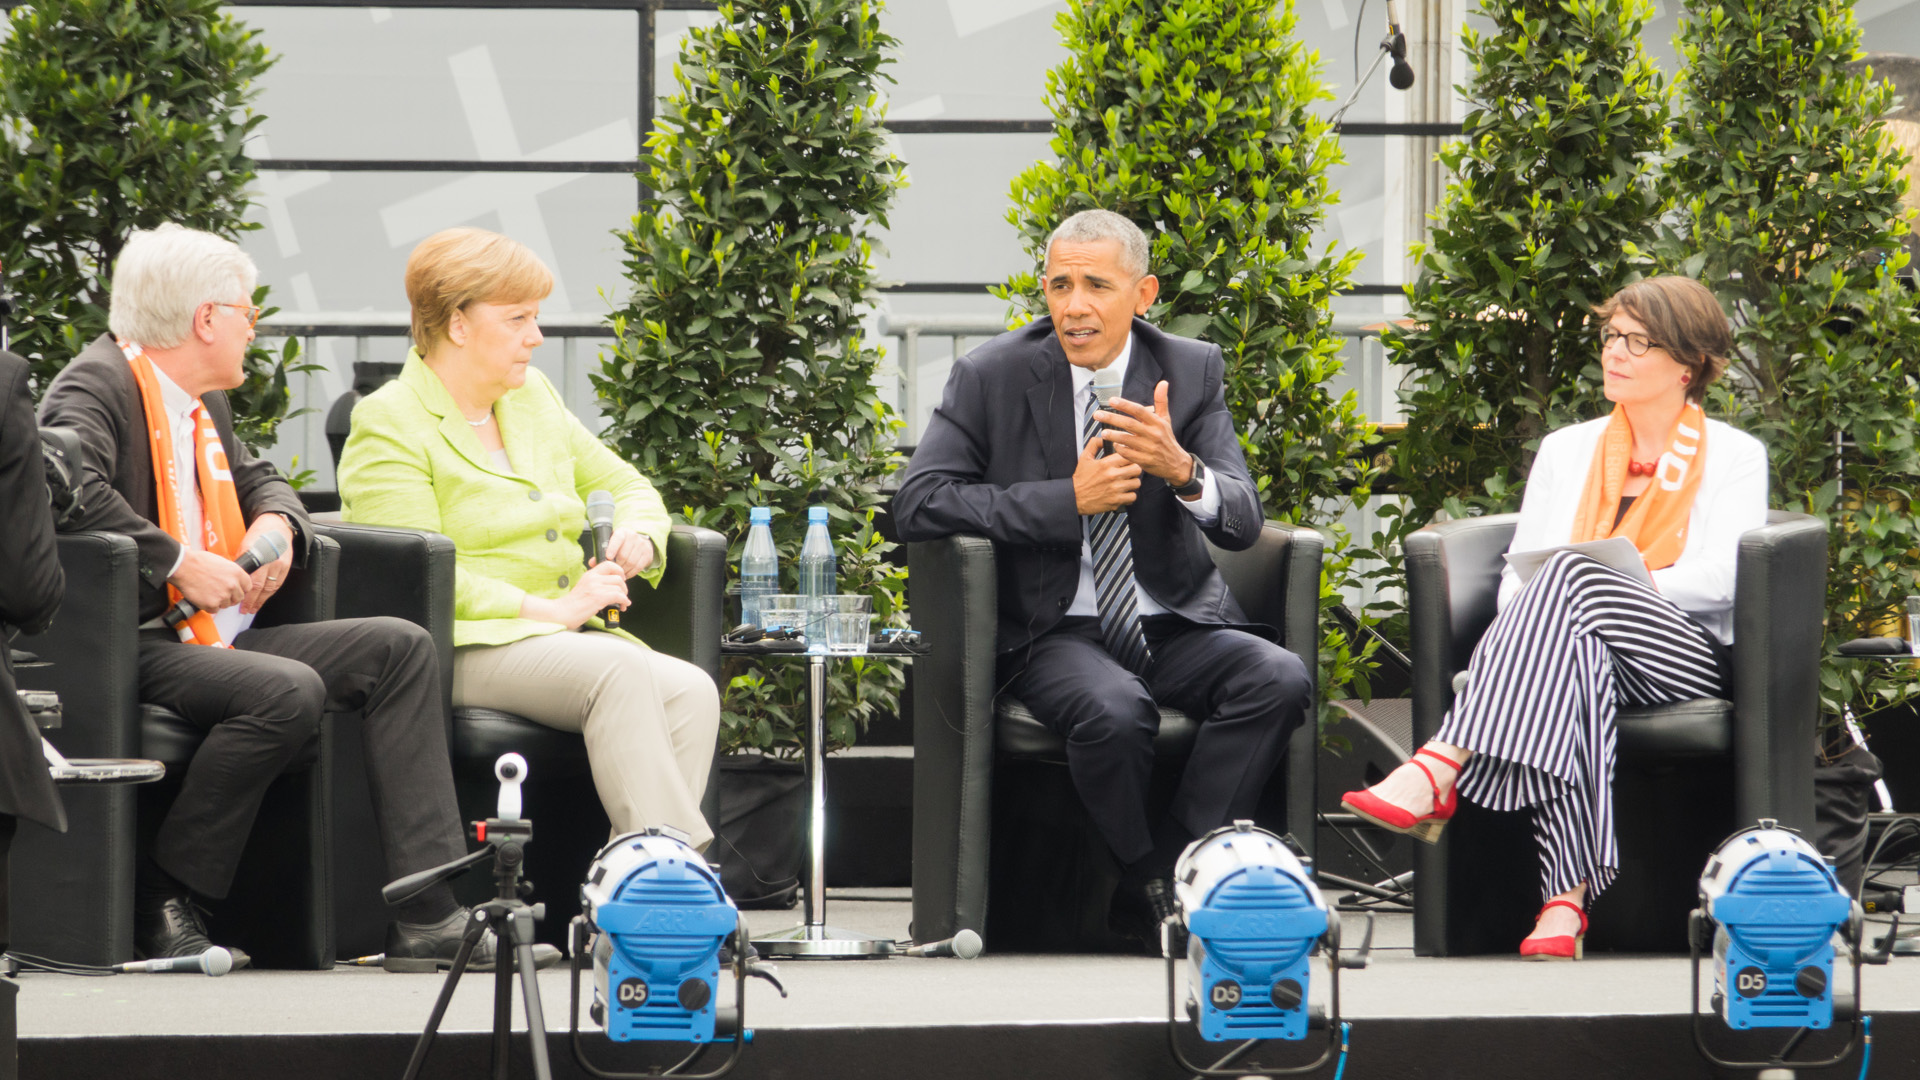 An politischer Prominenz fehlte es auf dem Kirchentag nicht: Bundeskanzlerin Angela Merkel (CDU; 2.v.l.) traf sich bei einem Podiumsgespräch mit Barack Obama, Ex-Präsident der USA (2.v.r.)